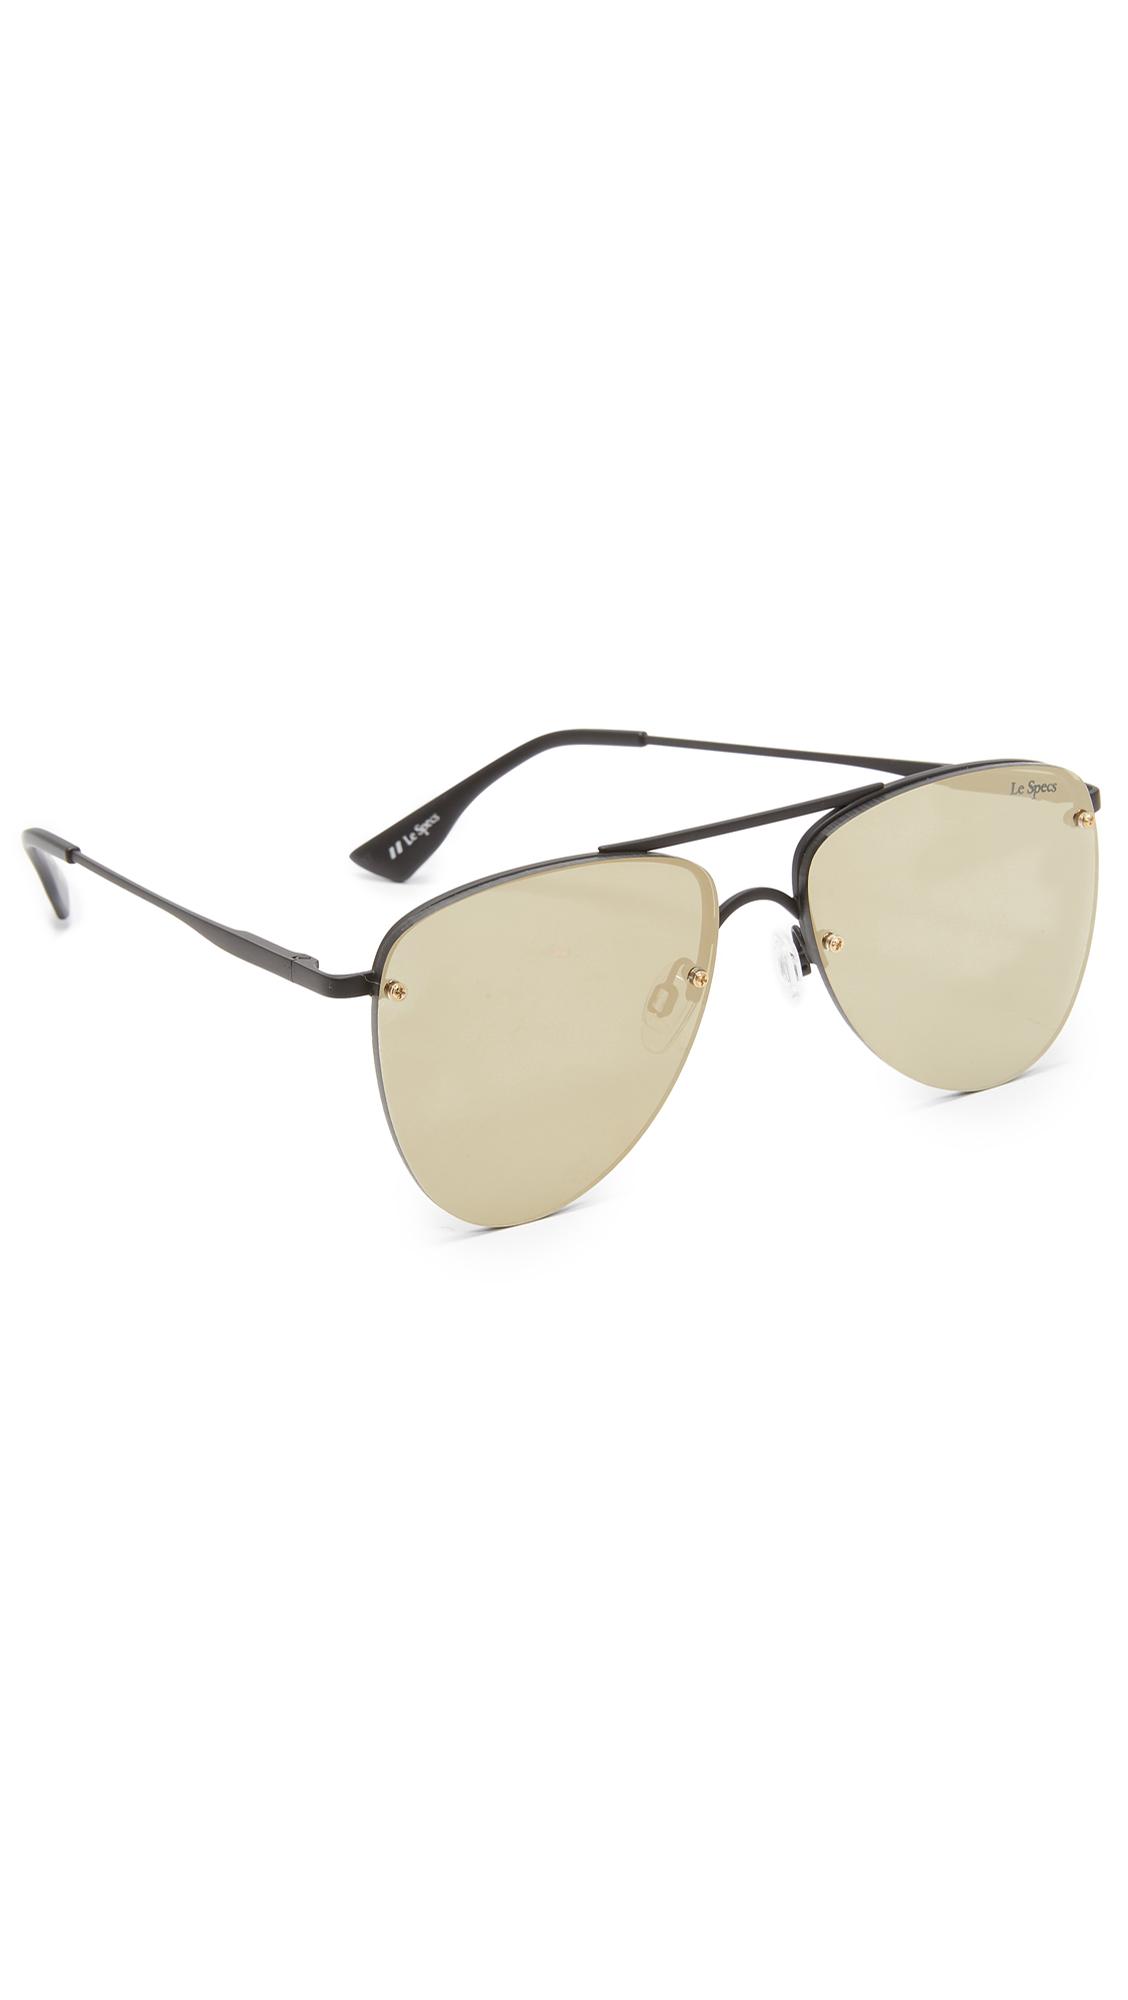 Le Specs The Prince Sunglasses In Matte Black/gold Revo Mirror | ModeSens